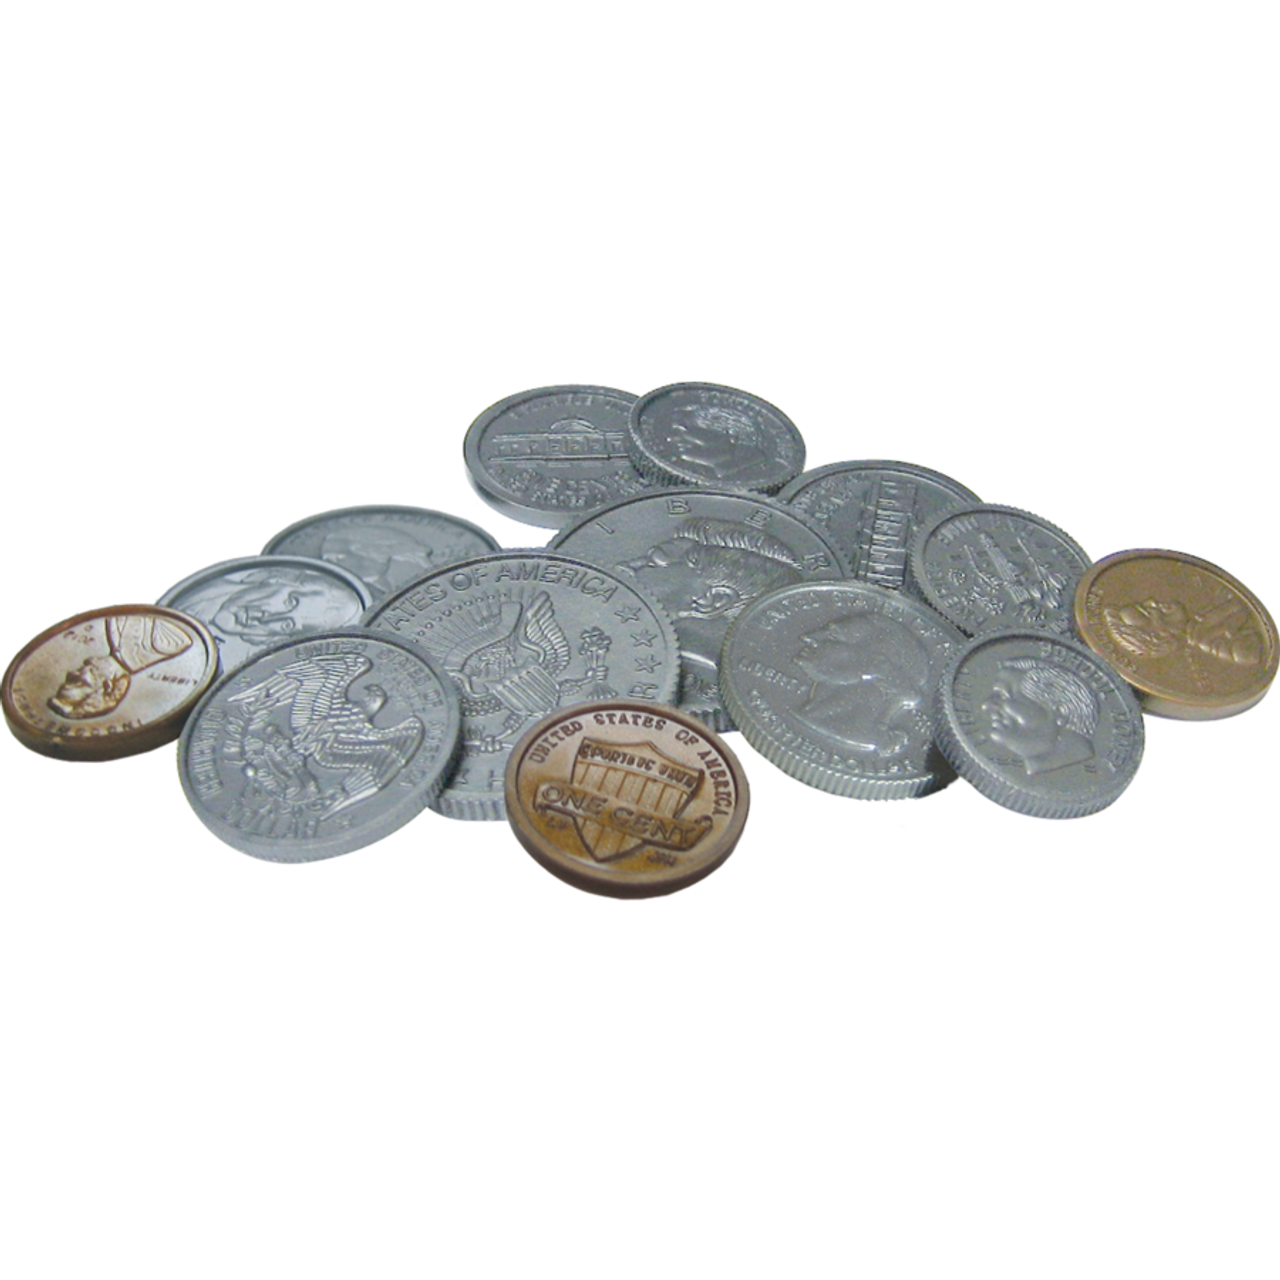 Recarregue Ludo Club Cash/Coins Instantaneamente - SEAGM